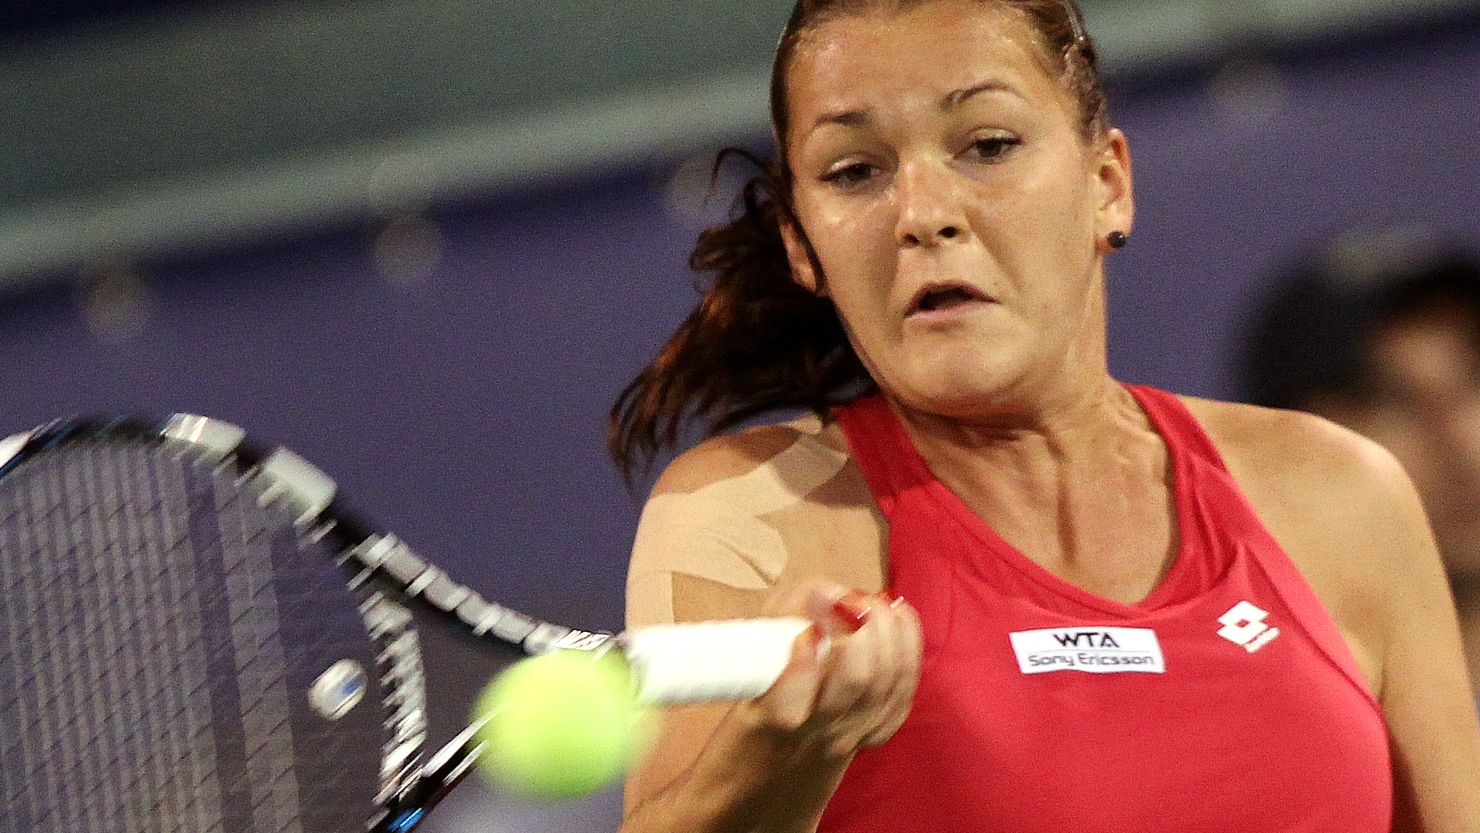 Polish tennis star Agnieszka Radwanska claimed the eighth title of her career in Dubai on Saturday.